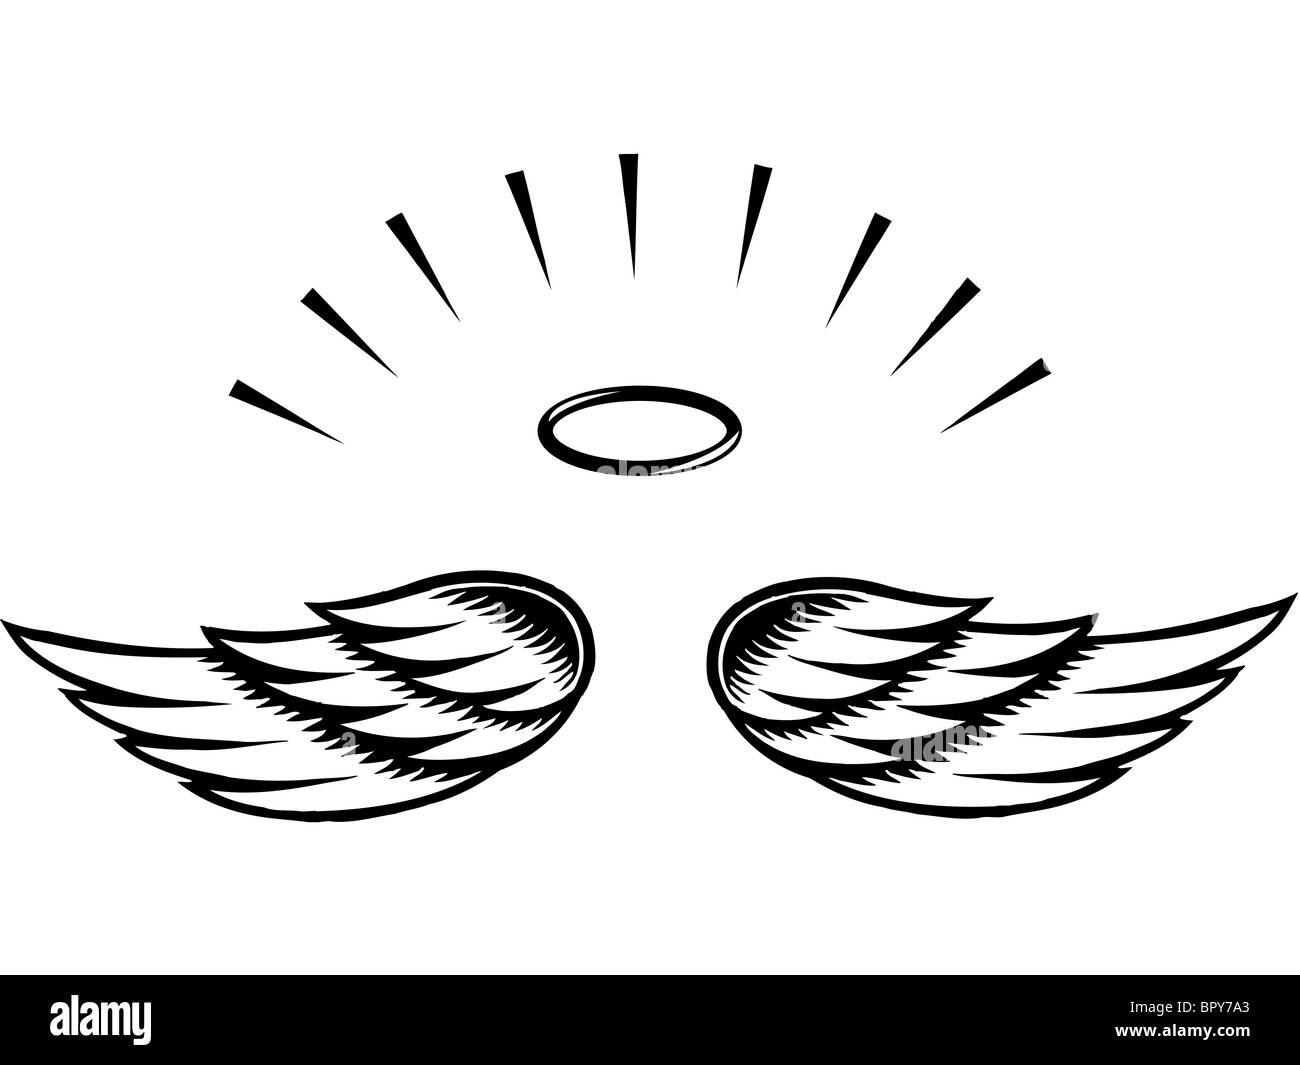 Illustration d'ailes d'ange Banque D'Images